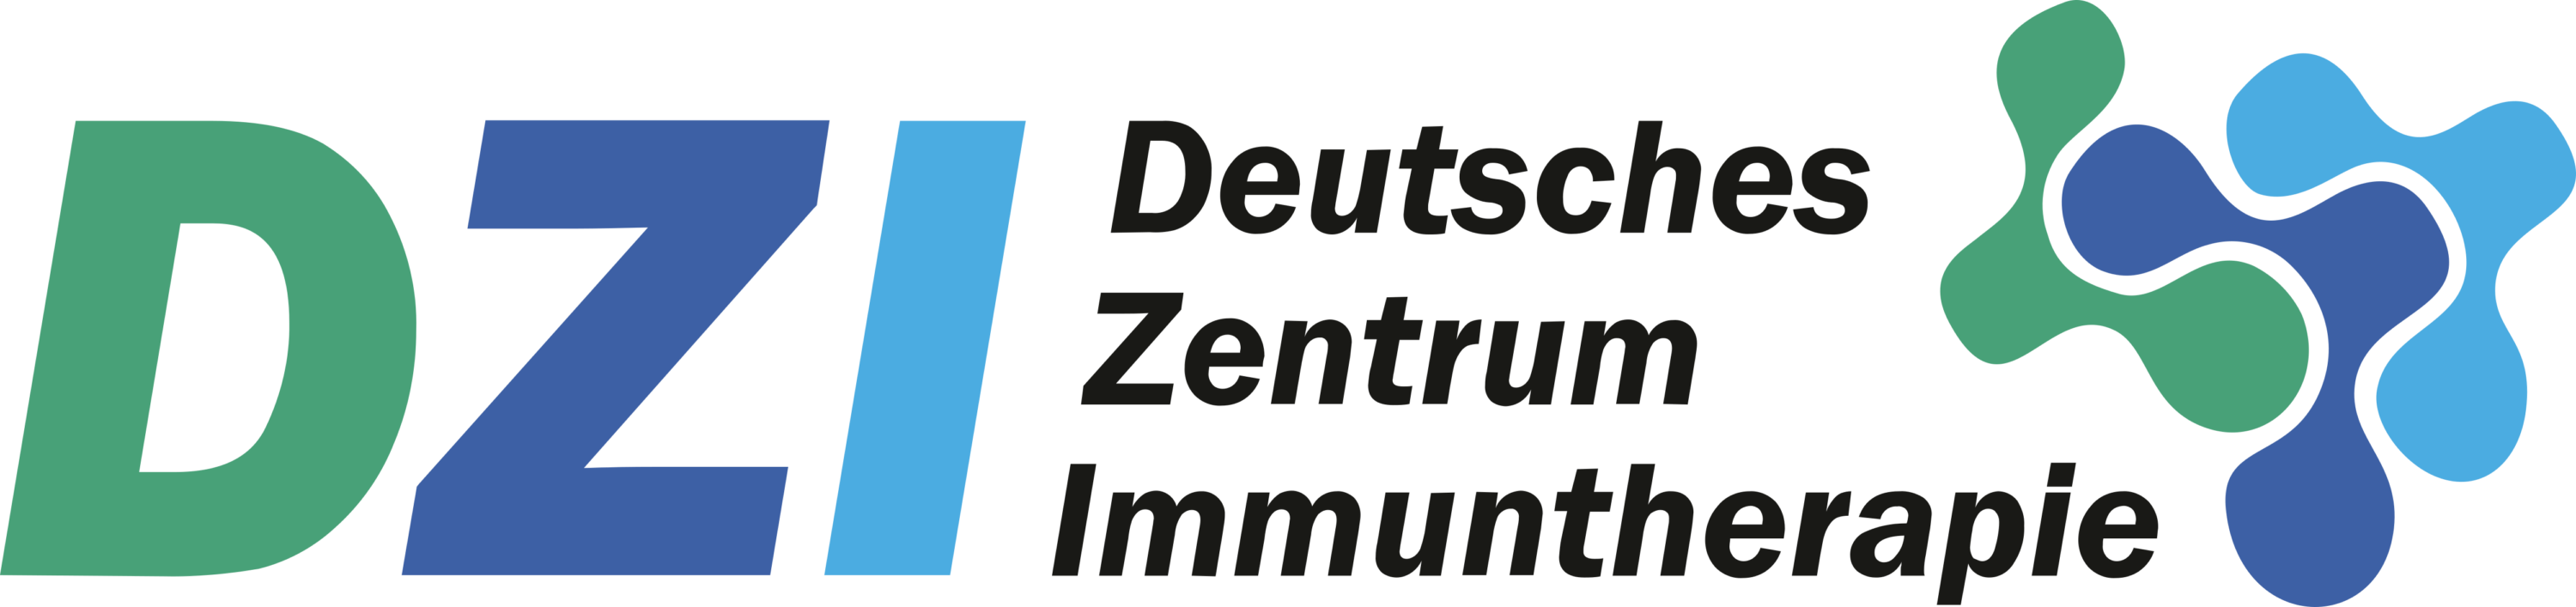 Deutsches Zentrum Immuntherapie Logo